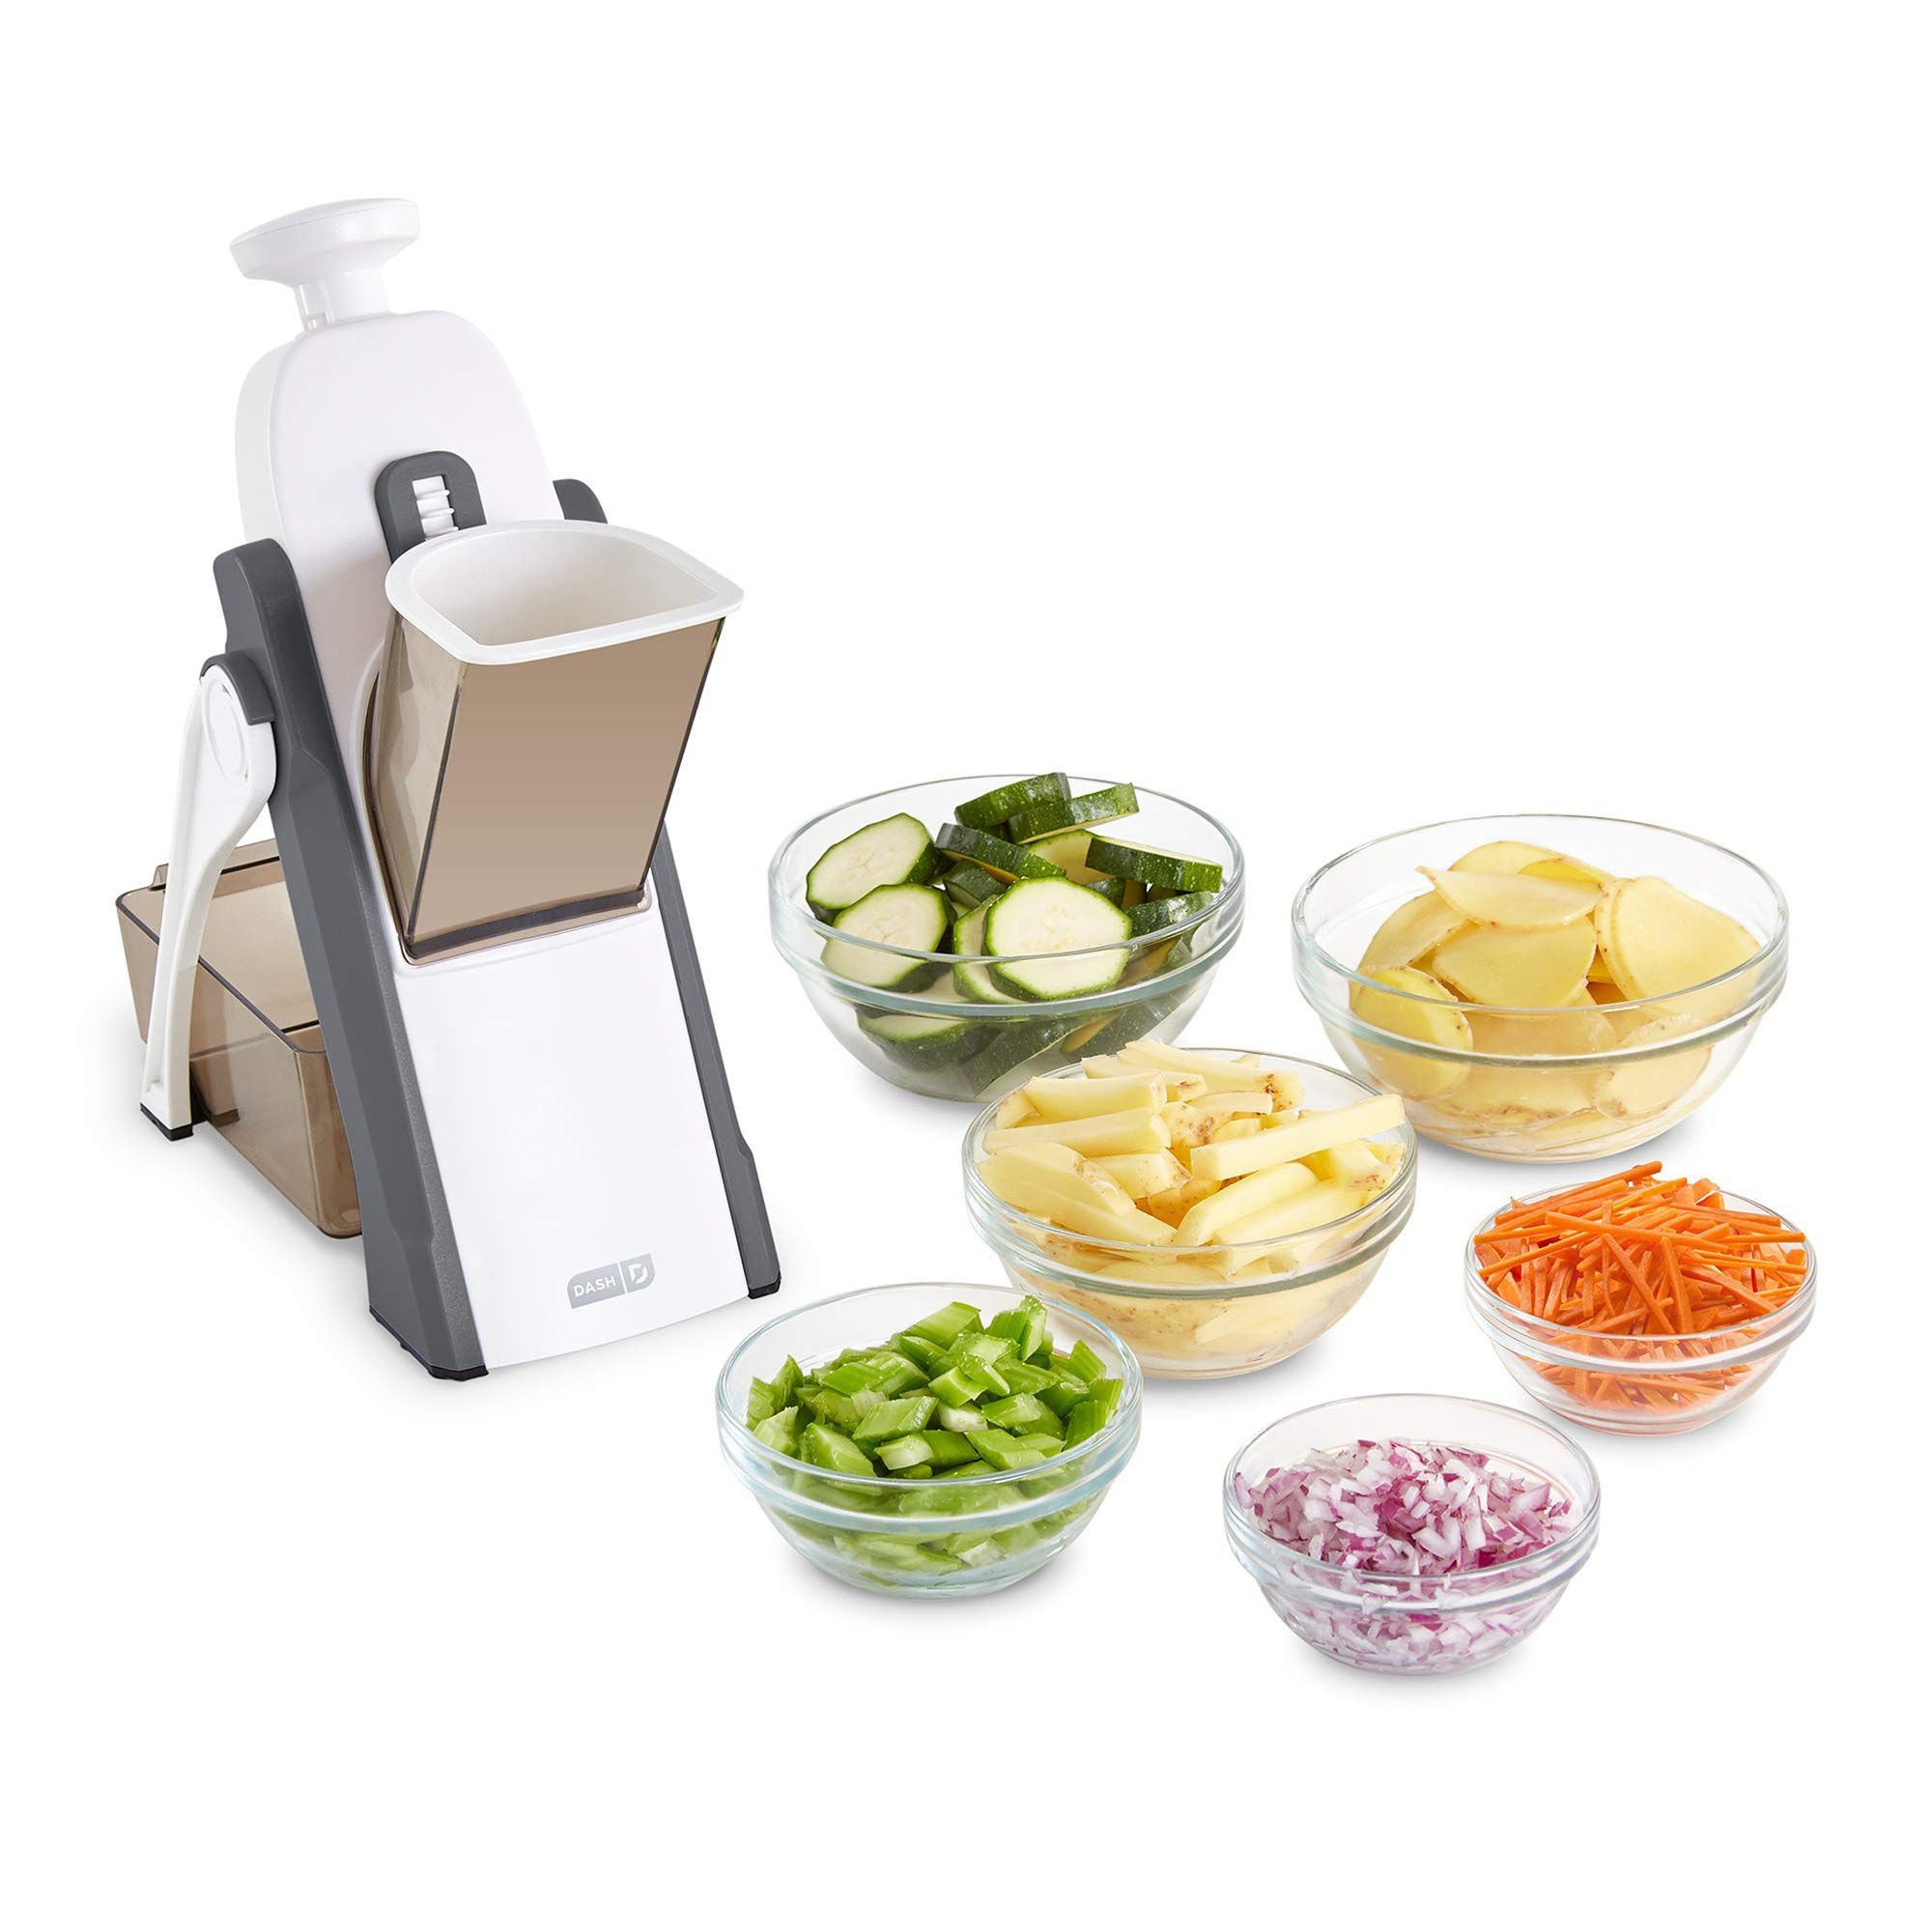 Prima Mandoline Vegetable Slicer, Kitchen Food Slicer With 5